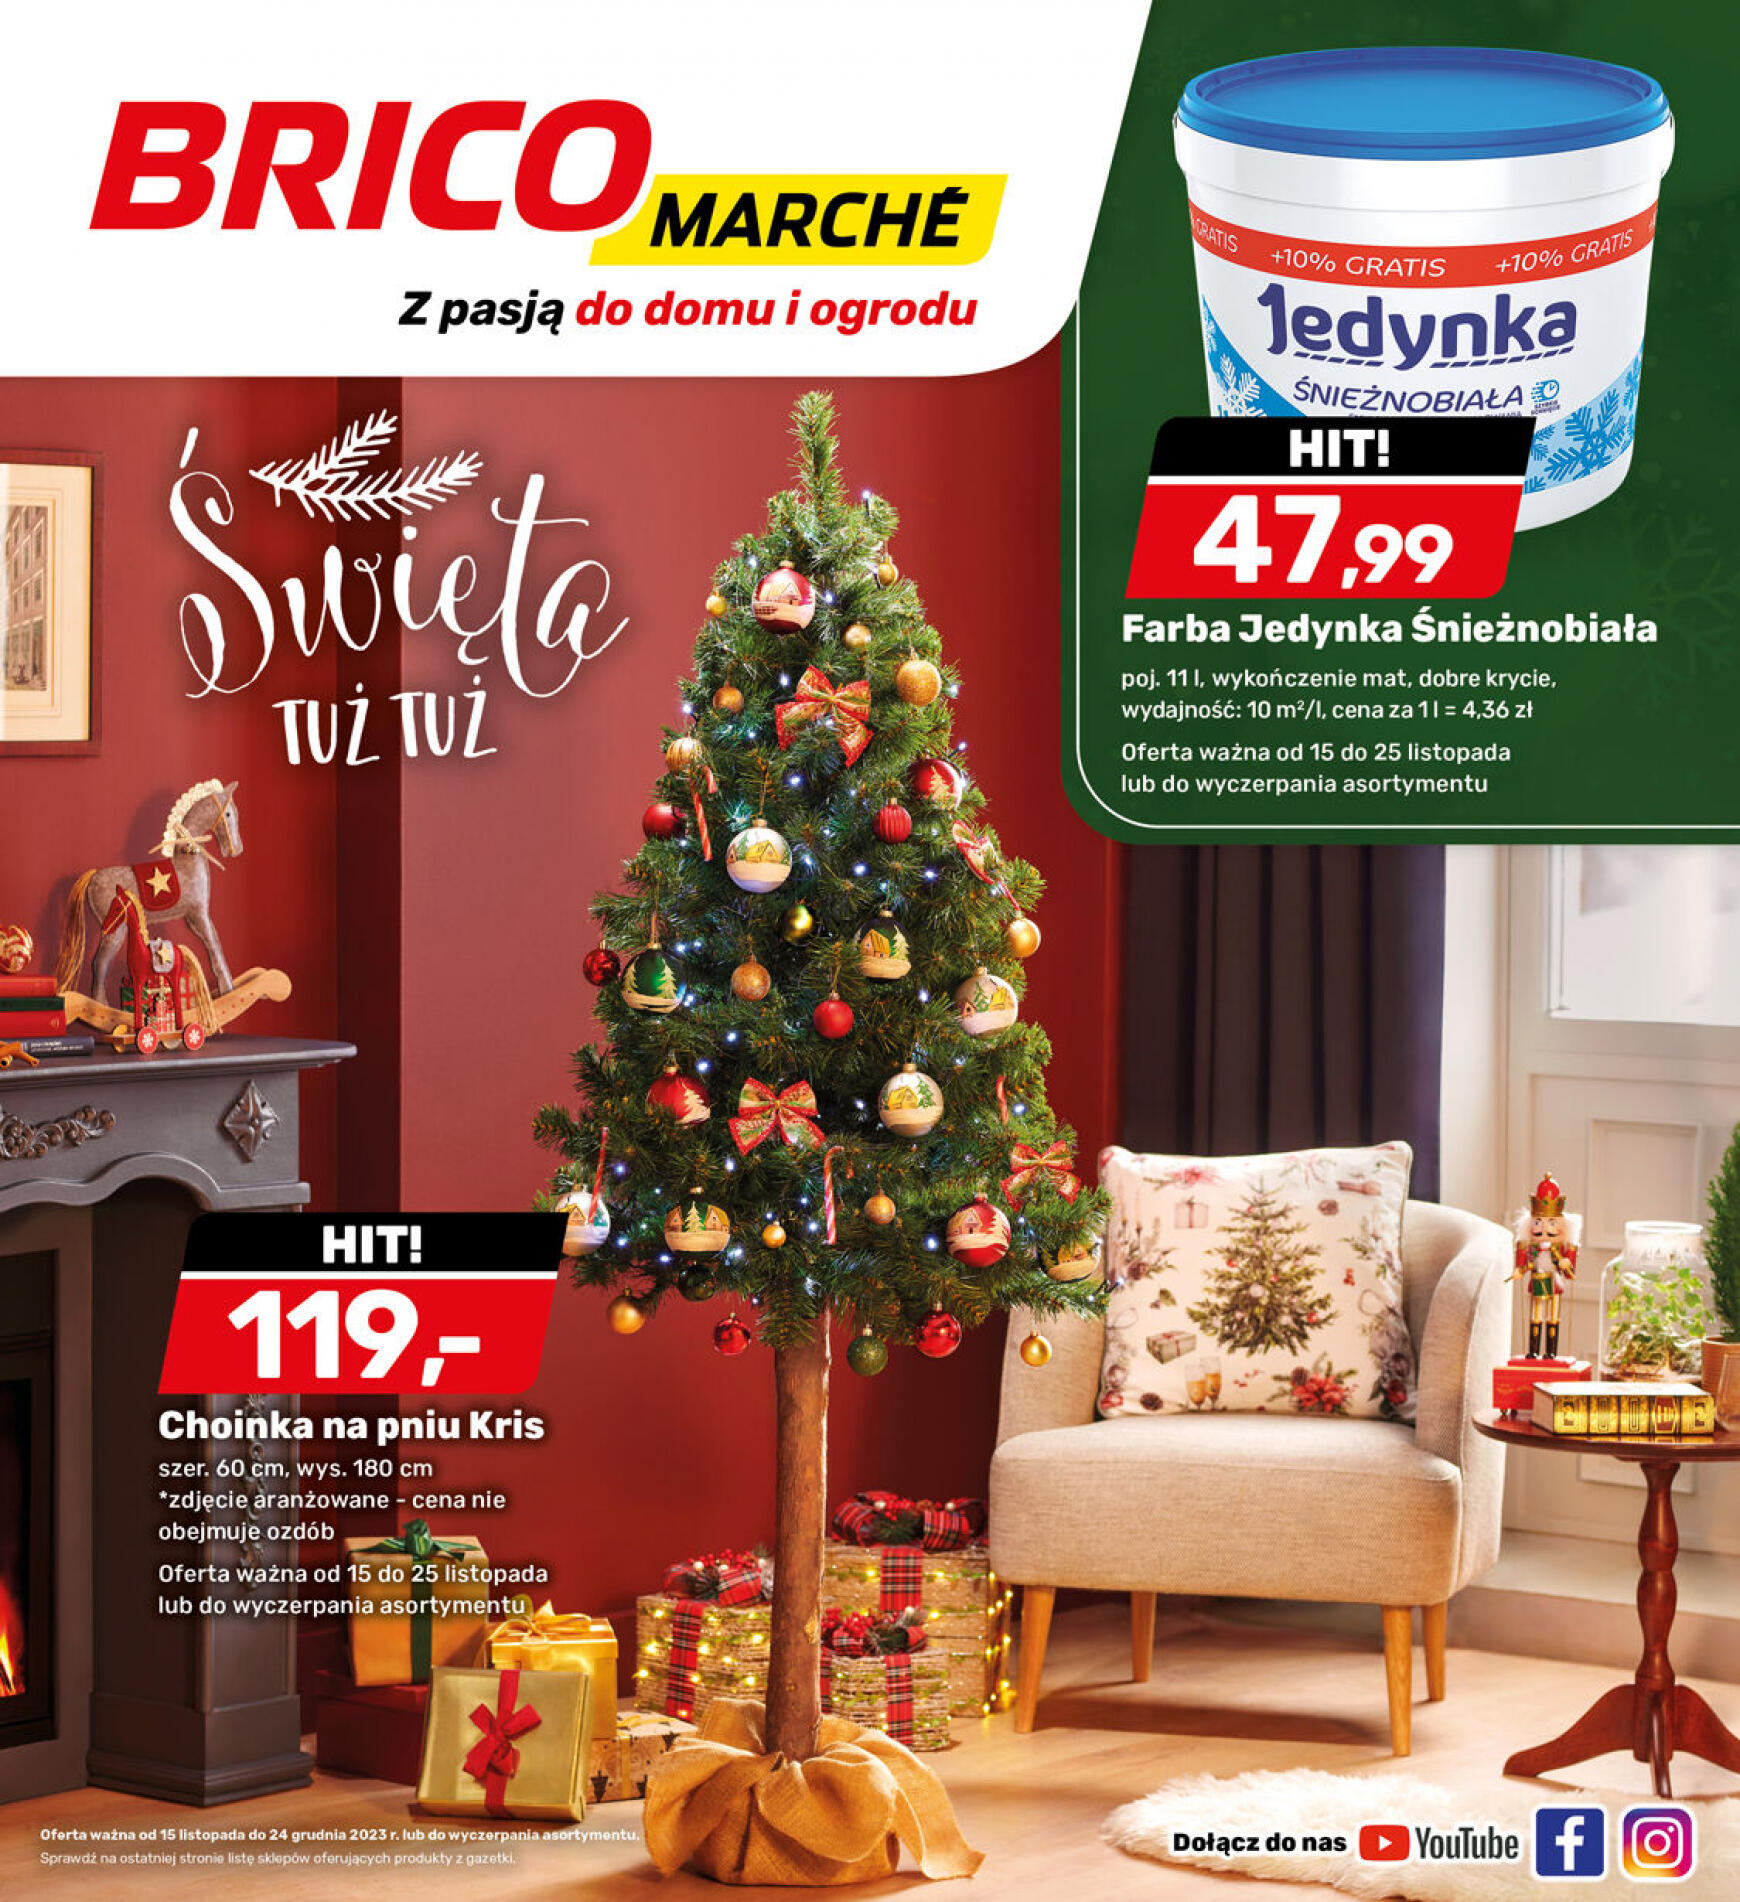 brico-marche - - Bricomarche - page: 15